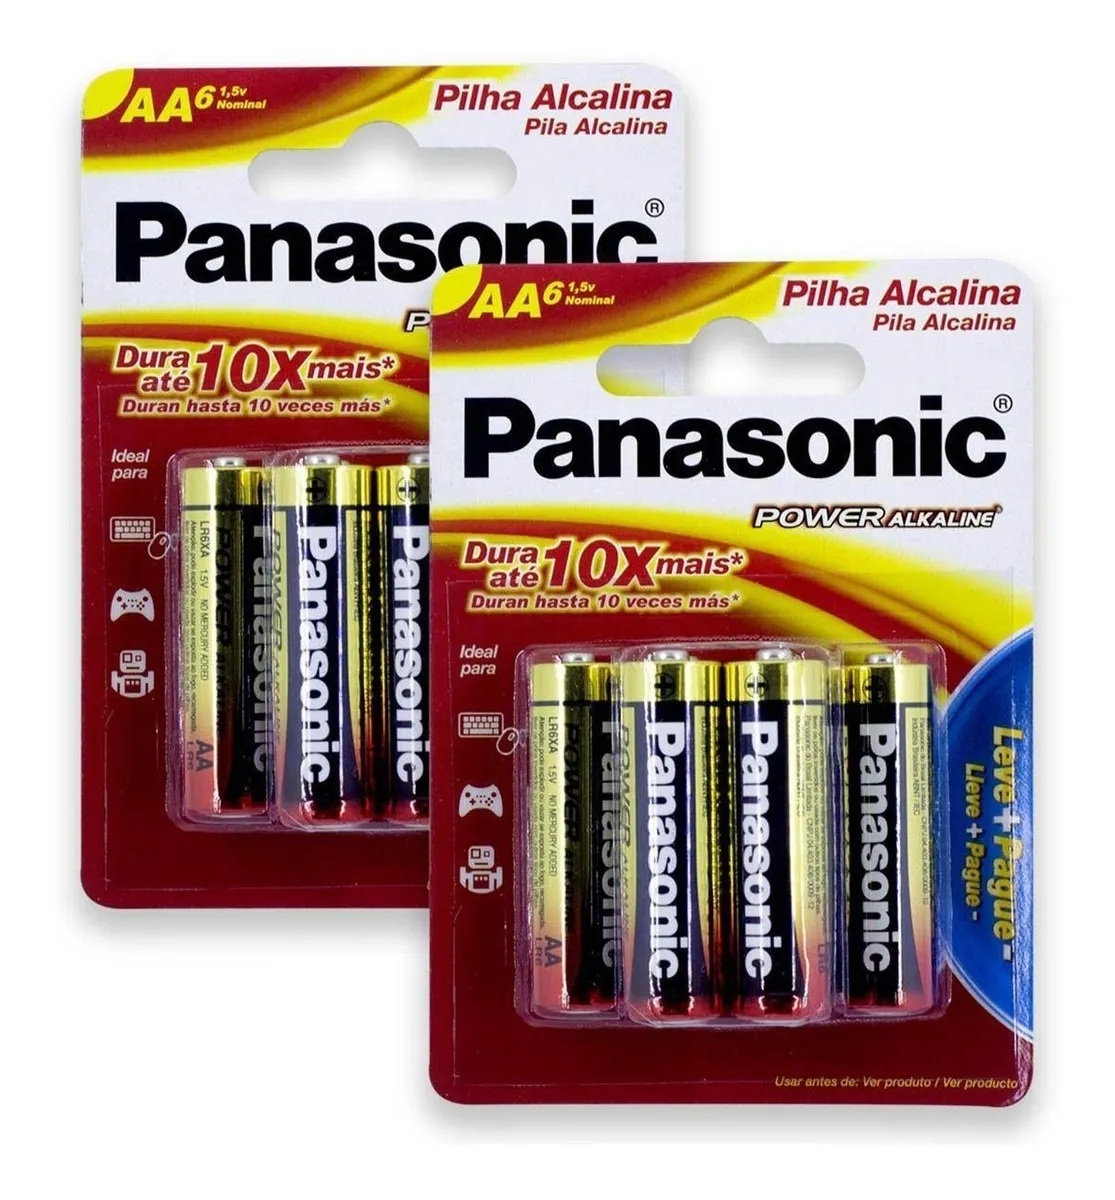 Pilhas Aa Alcalina Panasonic Kit C/8 Pilha Aa Original